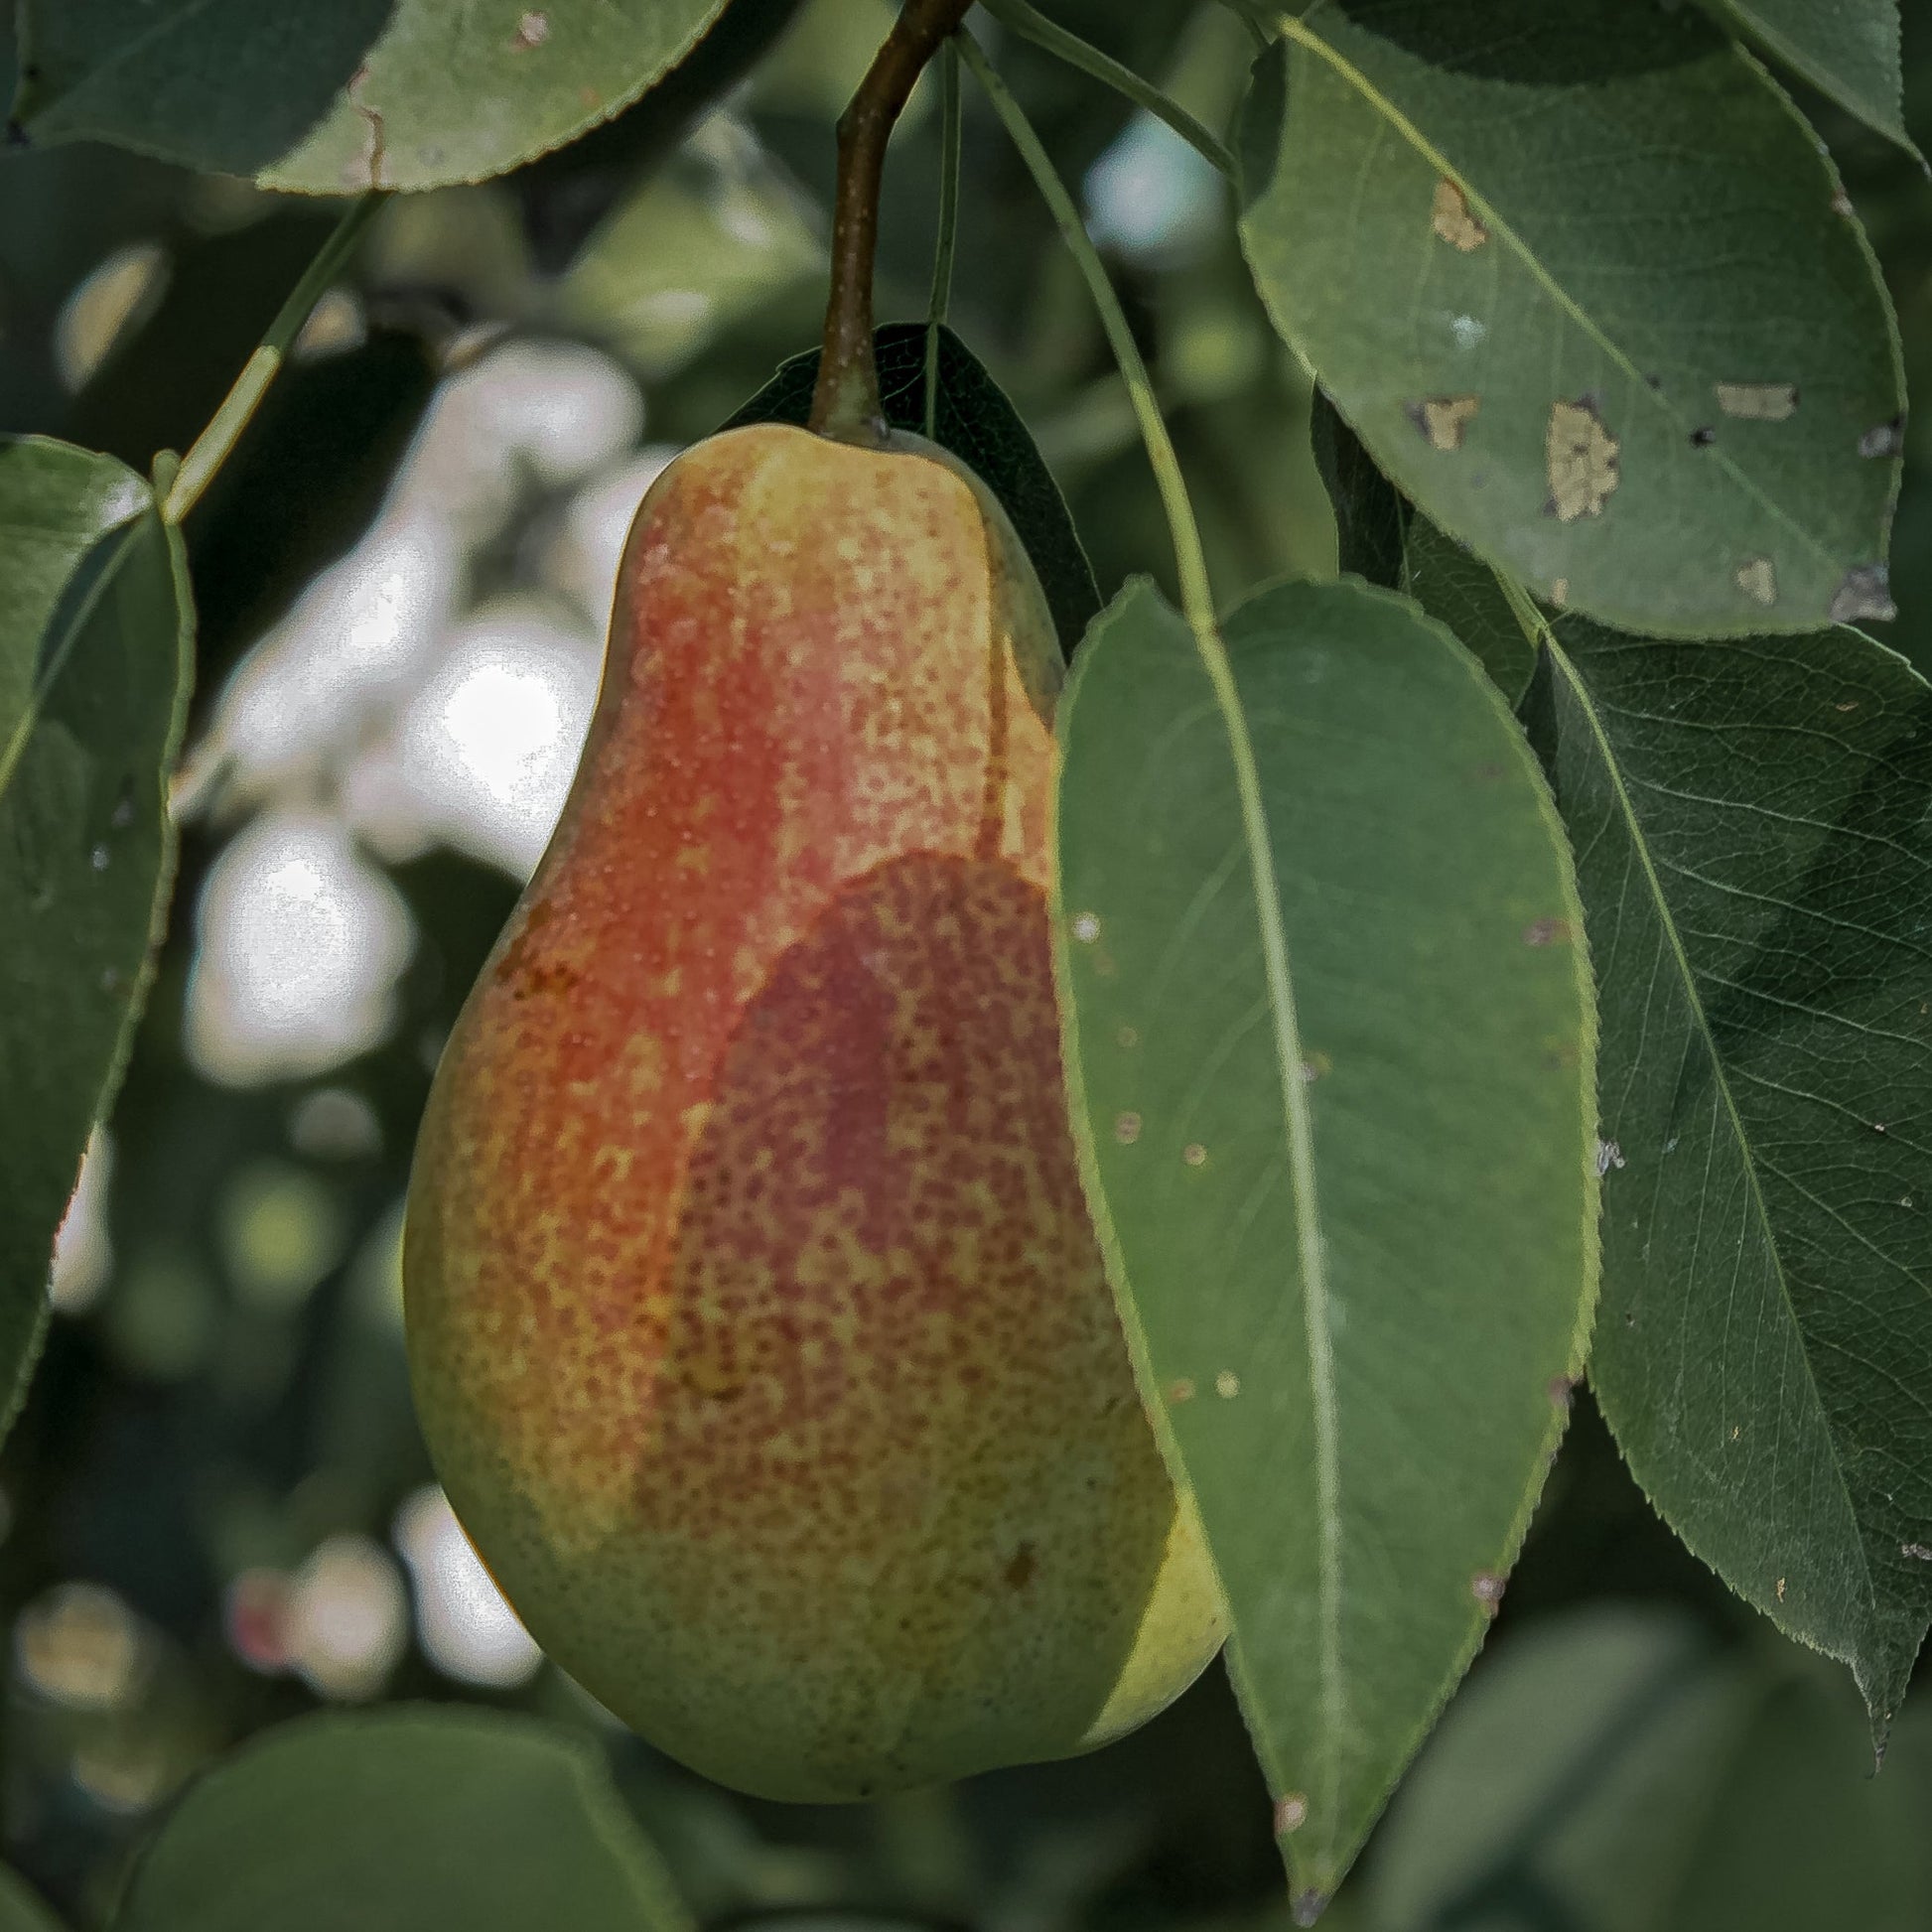 Close-up view Ocas pear.  